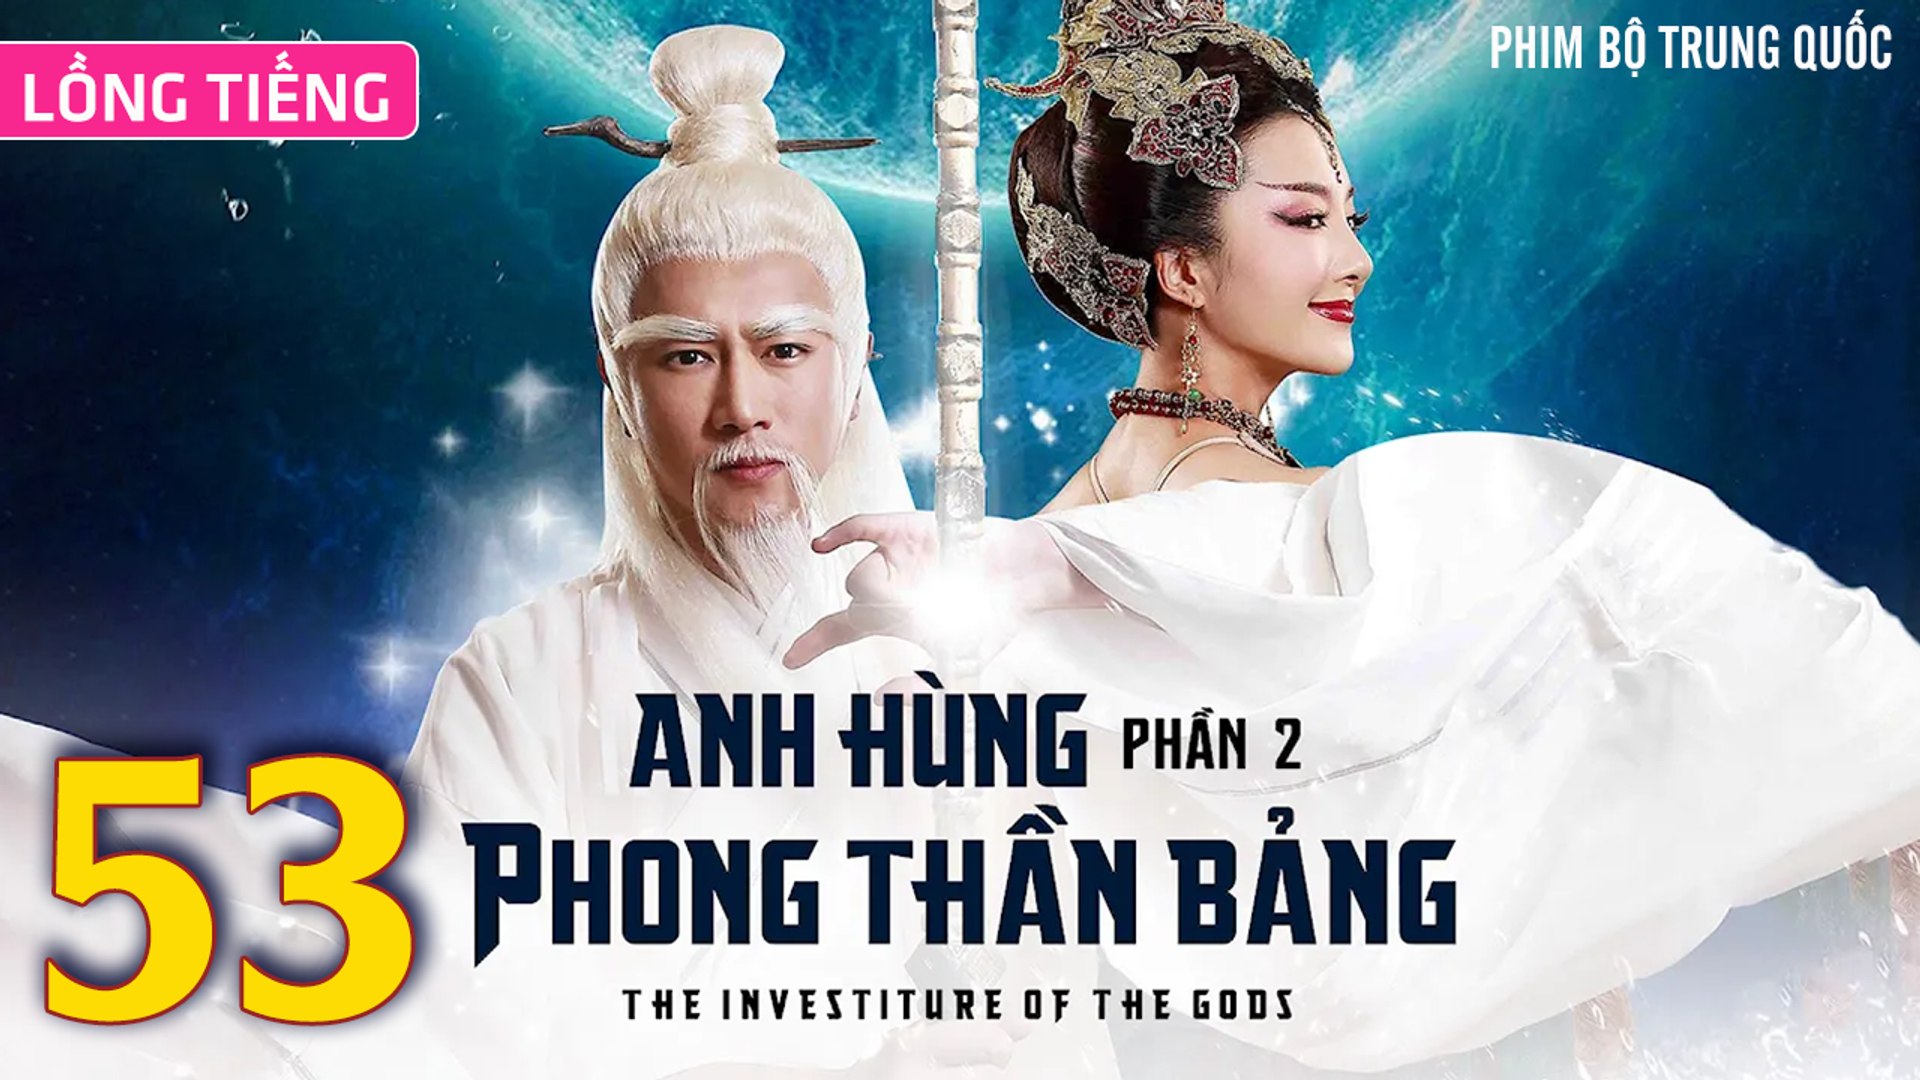 ⁣Phim Bộ Hay: ANH HÙNG PHONG THẦN BẢNG 2 - Tập 53 (Lồng Tiếng) | Phim Bộ Trung Quốc Hay Nhất 2023